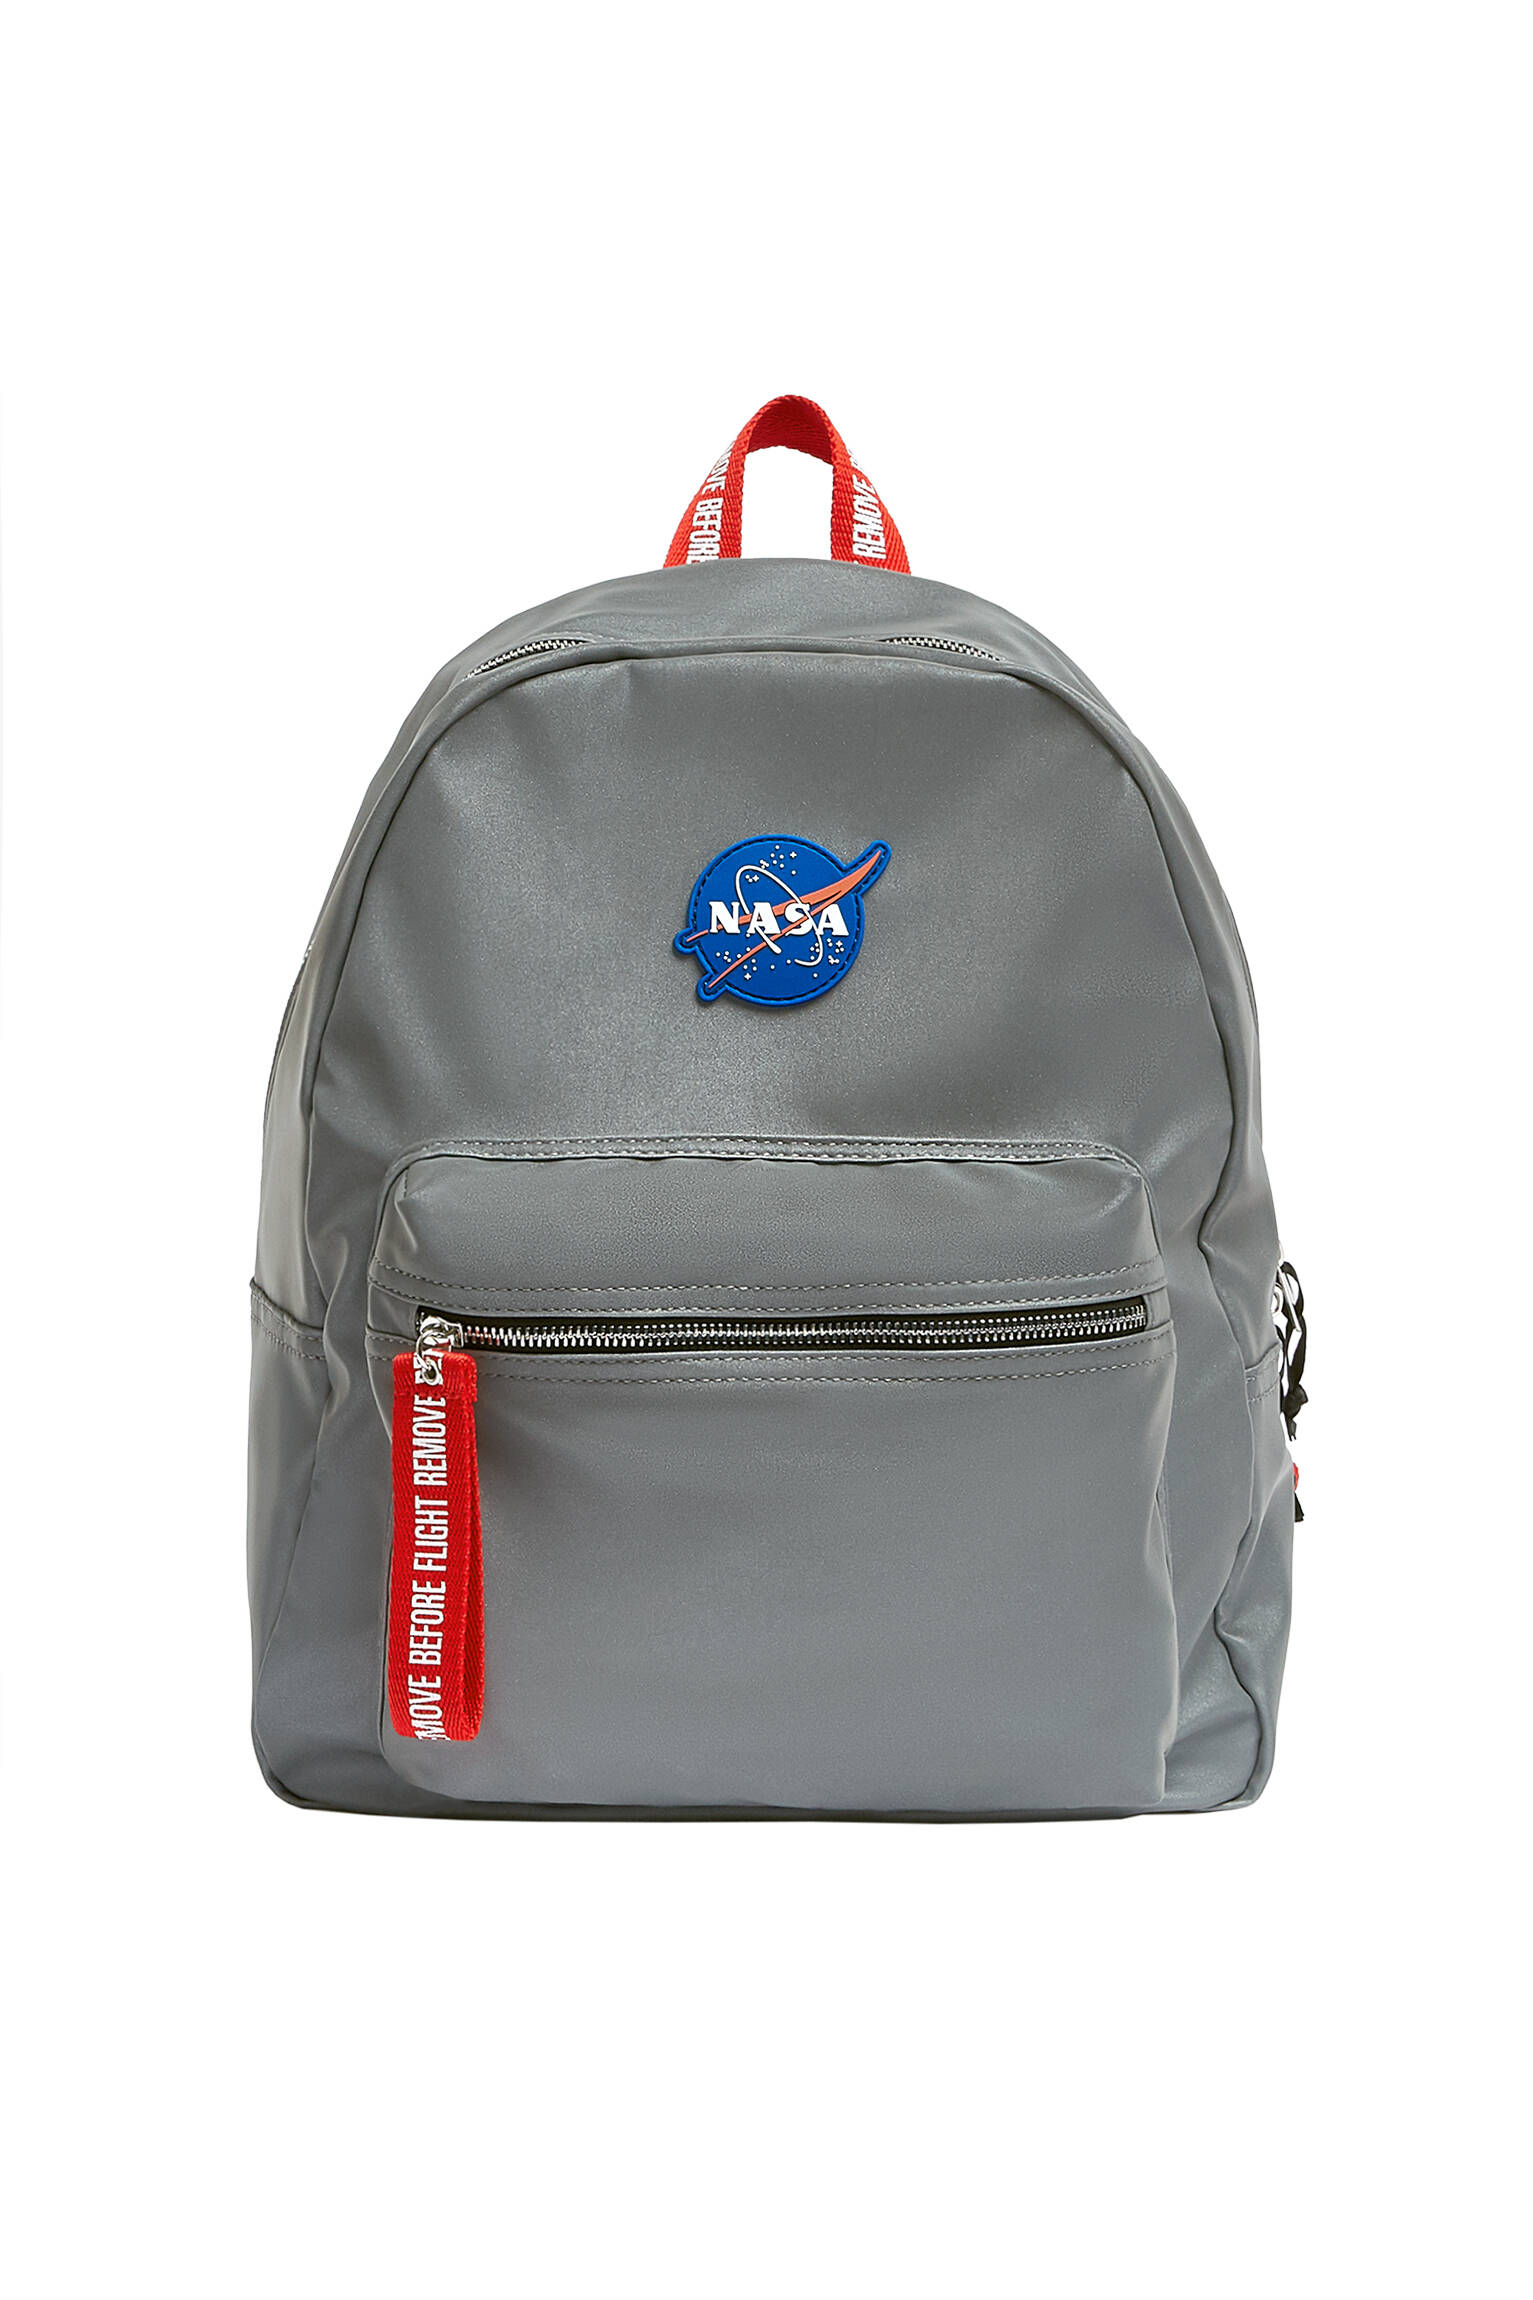 СЕРЕБРИСТЫЙ Рюкзак NASA со светоотражающим эффектом Pull & Bear